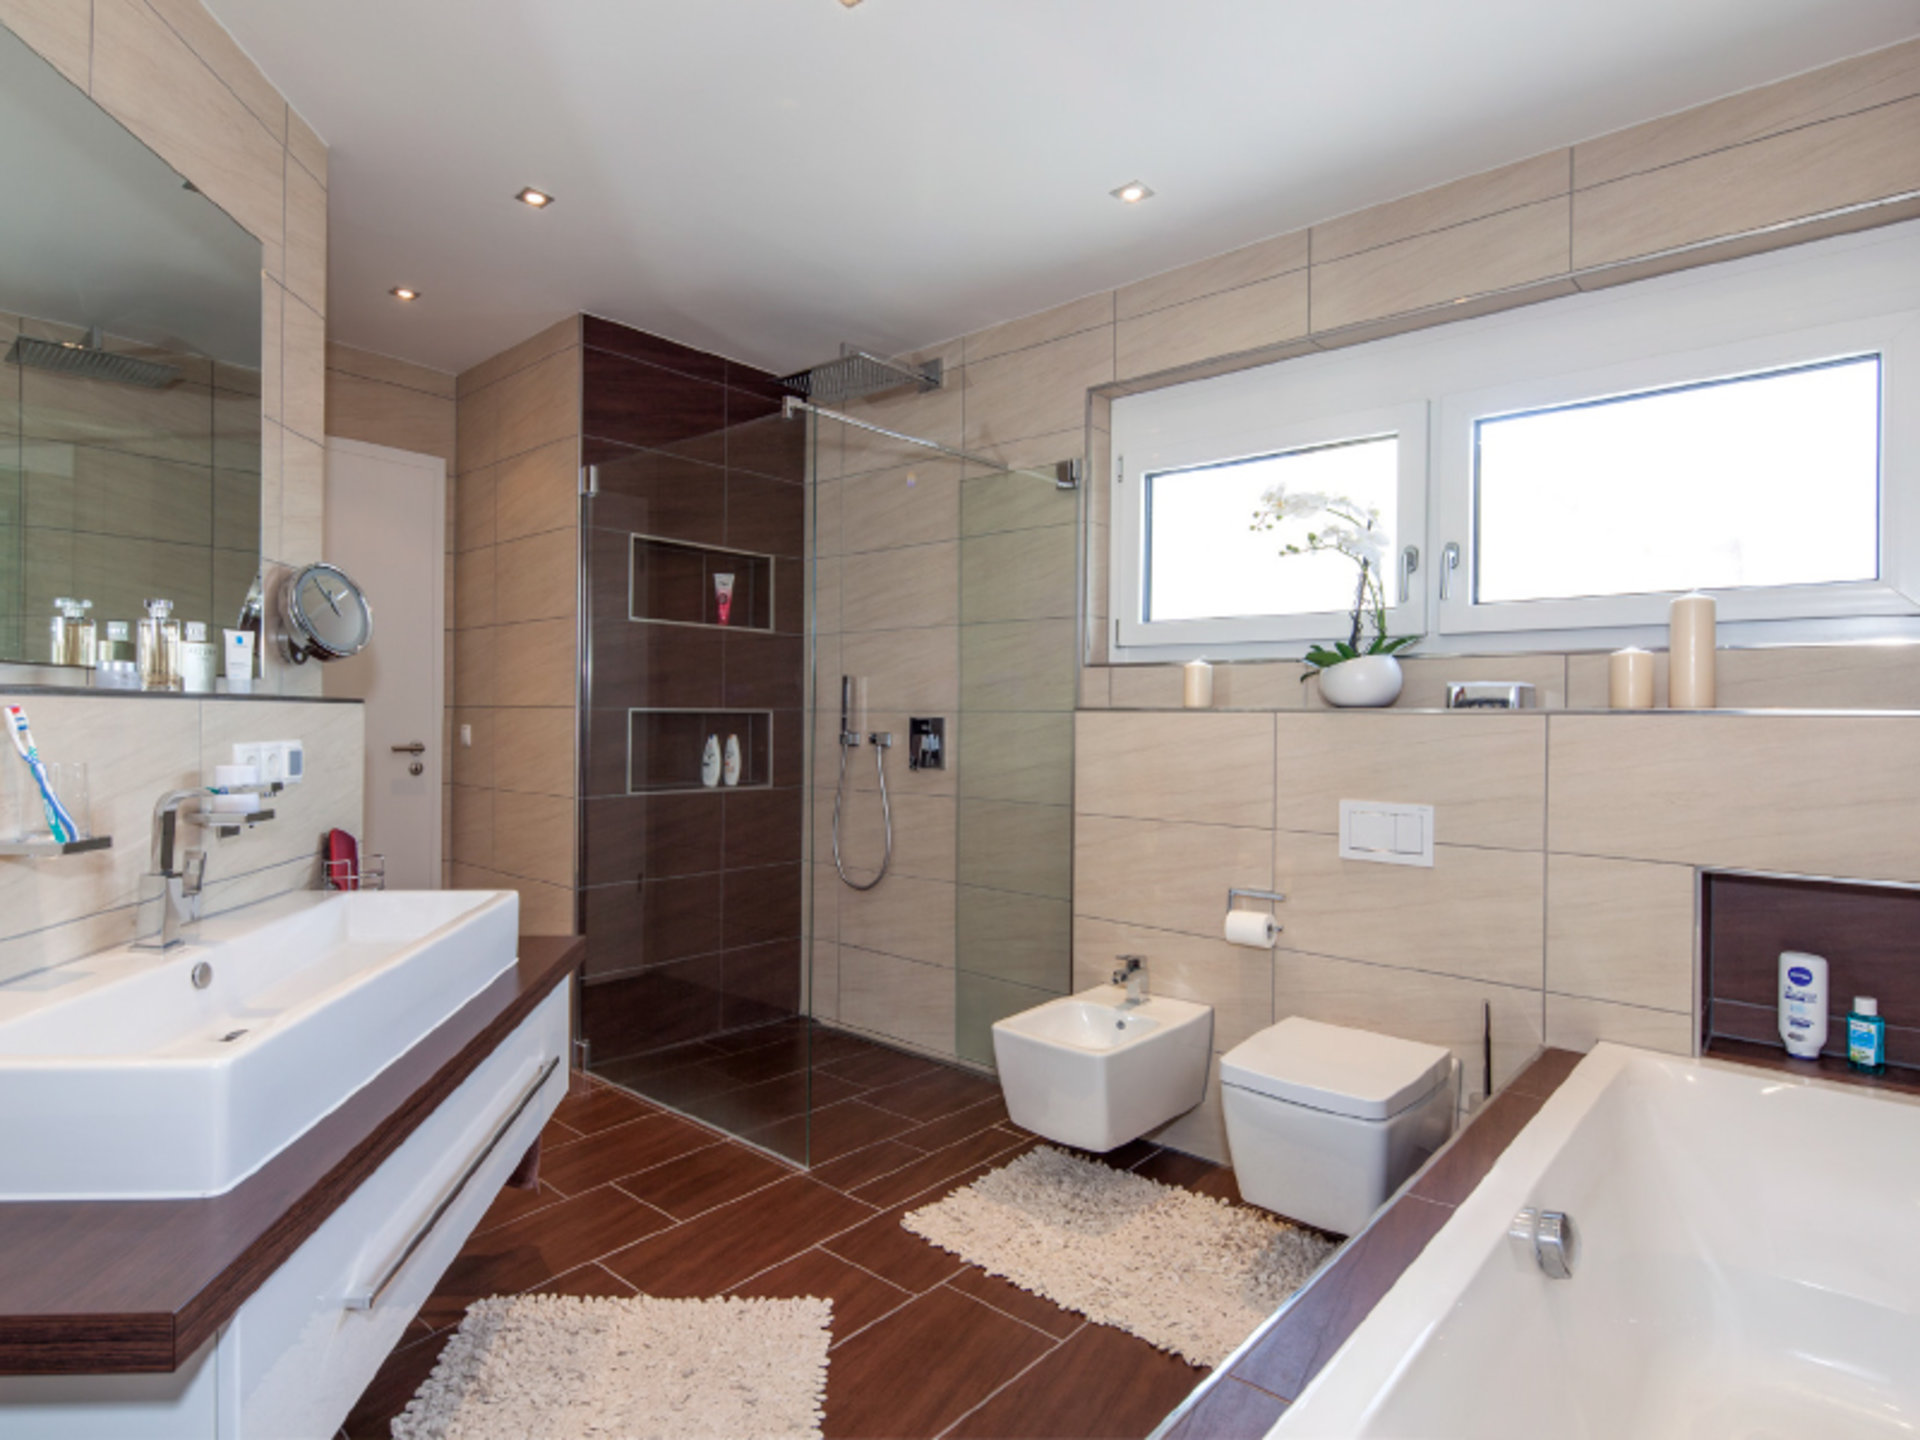 Haus Fuchs – Badezimmer in warmer Holzoptik mit bodengleicher Dusche (Foto: BAUMEISTER-HAUS)